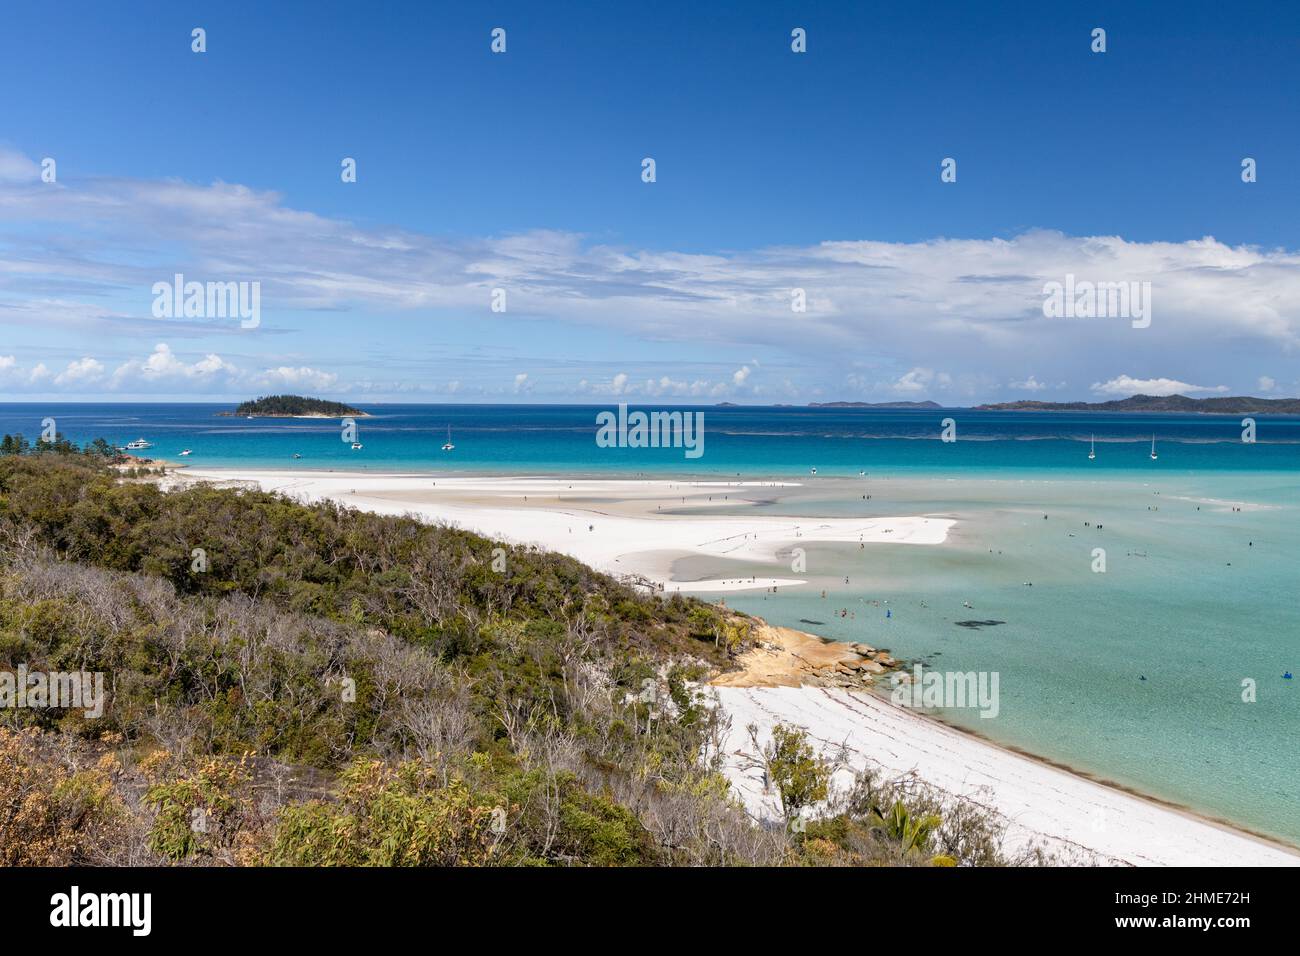 Plage de Whitehaven. Élu l'une des meilleures destinations de voyage. Whitsundays Australie. Îles Whitsunday, Queensland. Vacances de voile. Banque D'Images